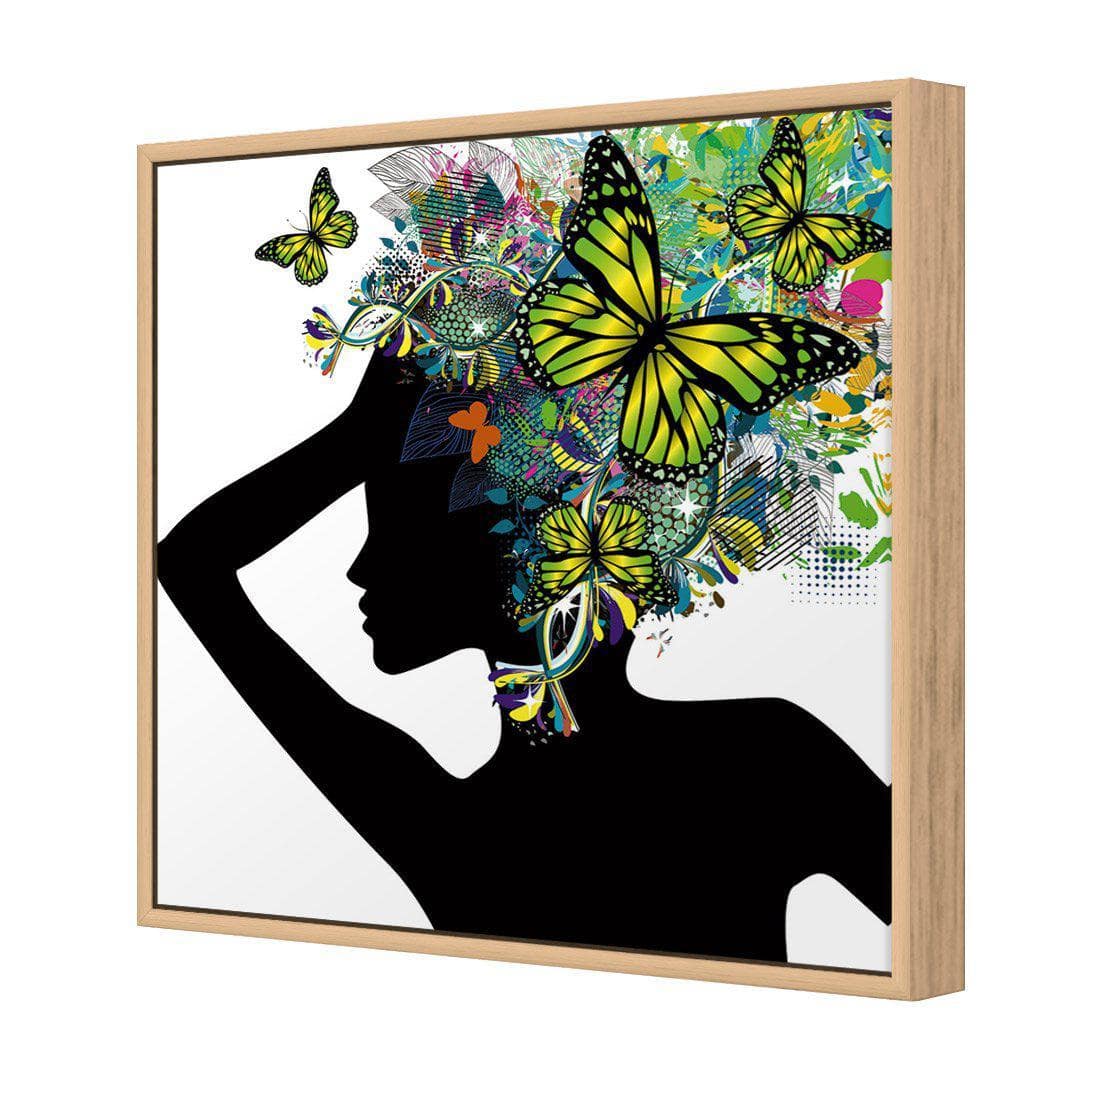 Silhouette Of Butterflies Canvas Art-Canvas-Wall Art Designs-30x30cm-Canvas - Oak Frame-Wall Art Designs